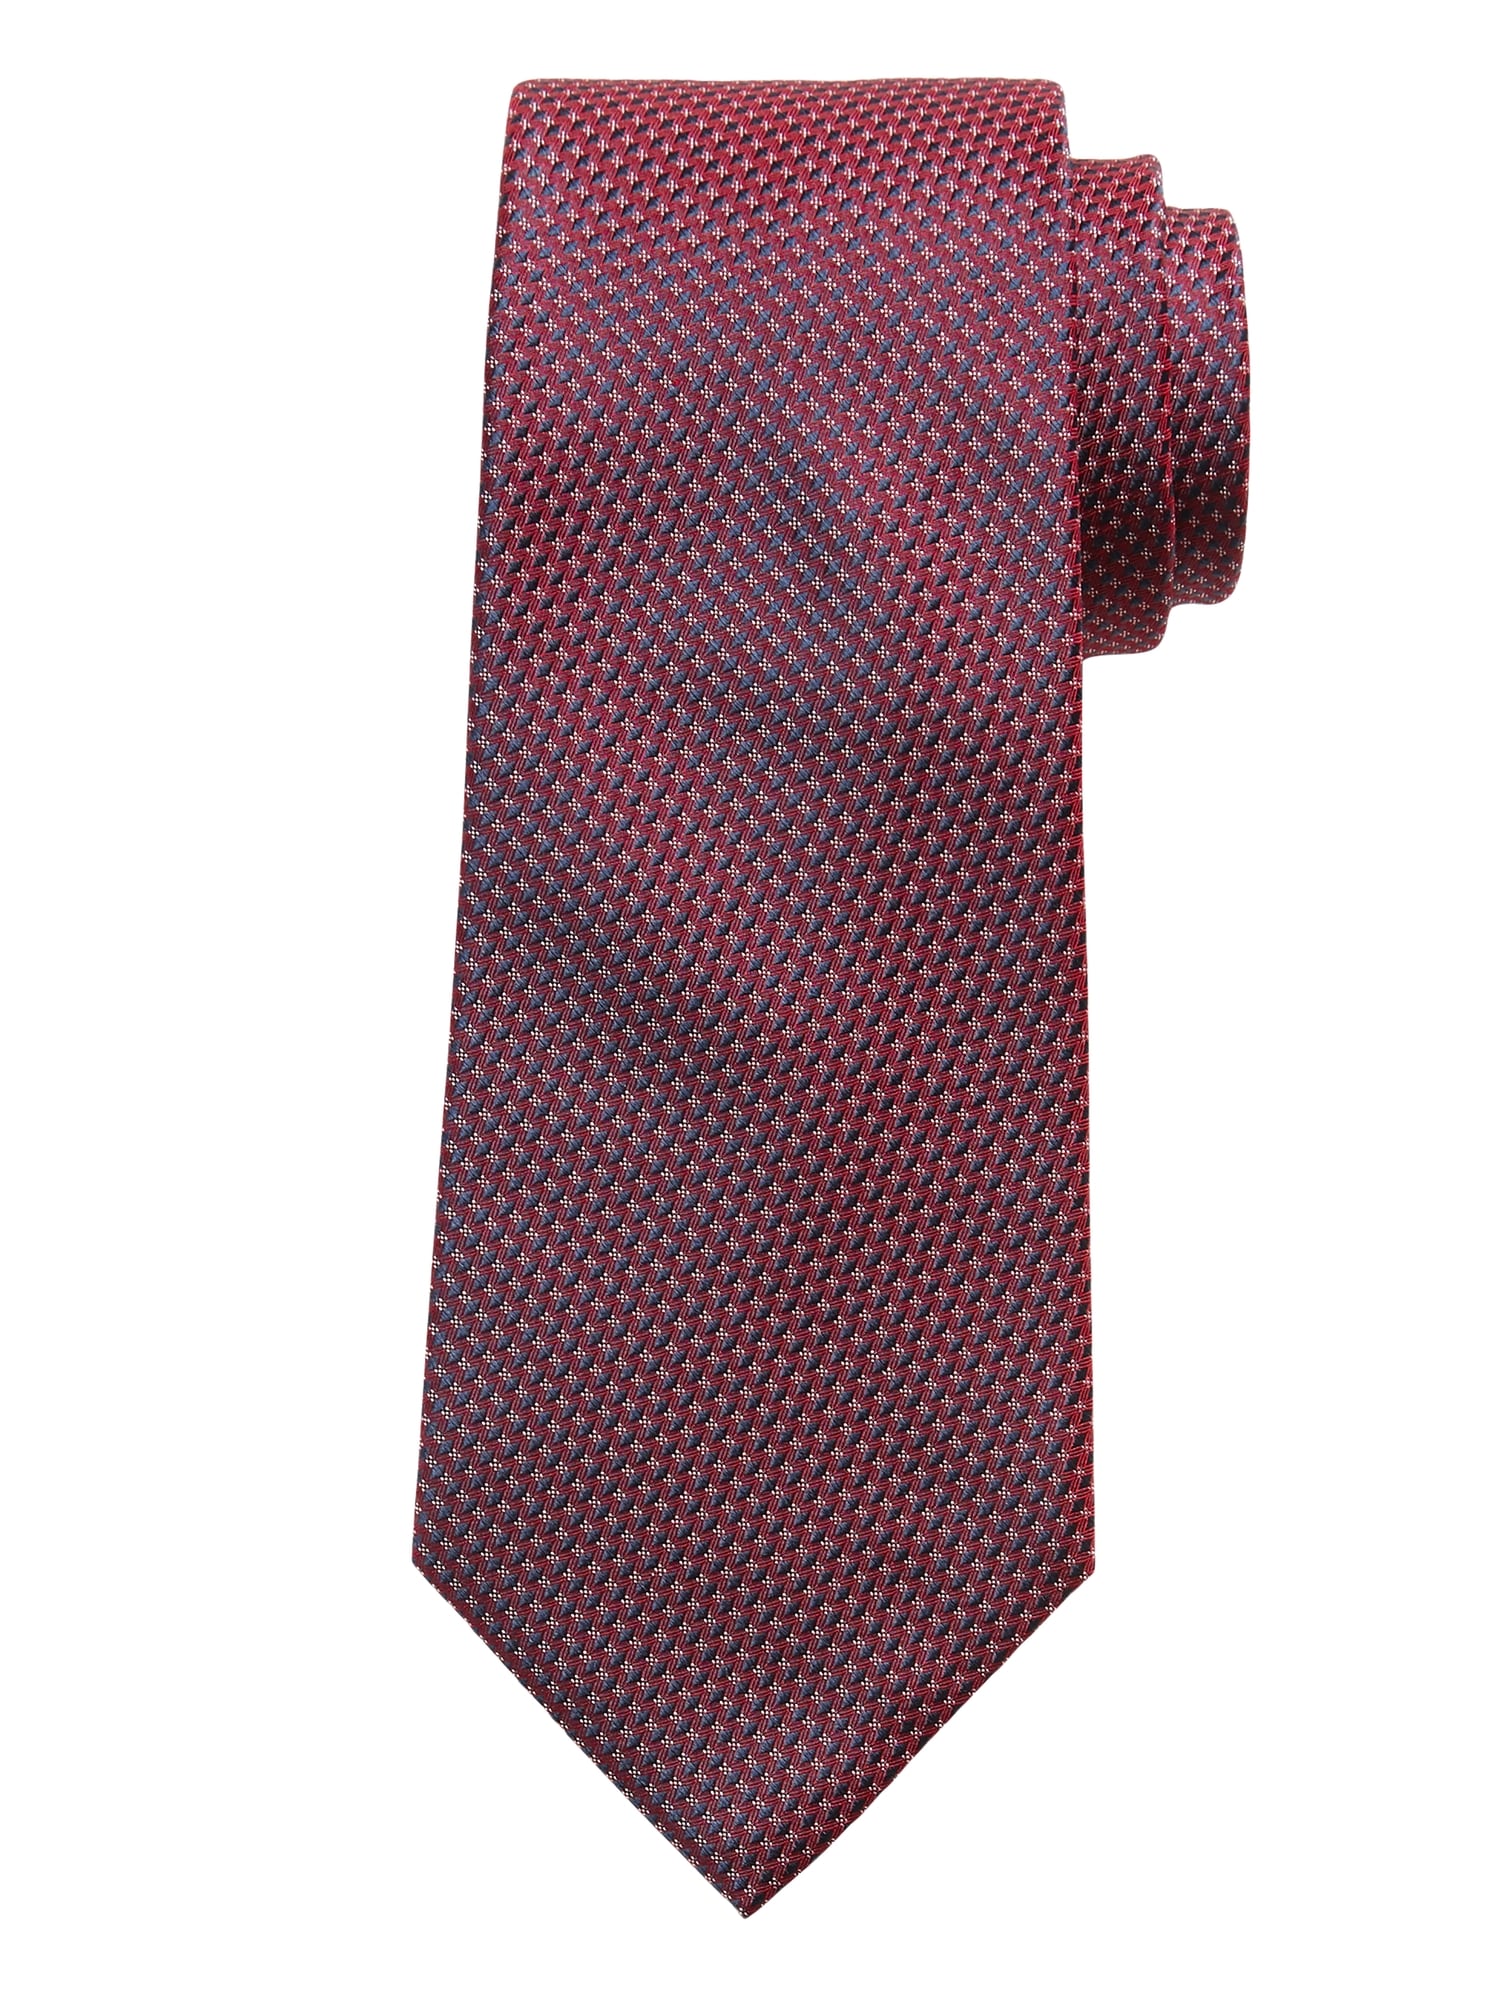 Cravate en soie à motifs géométriques et à micro pois